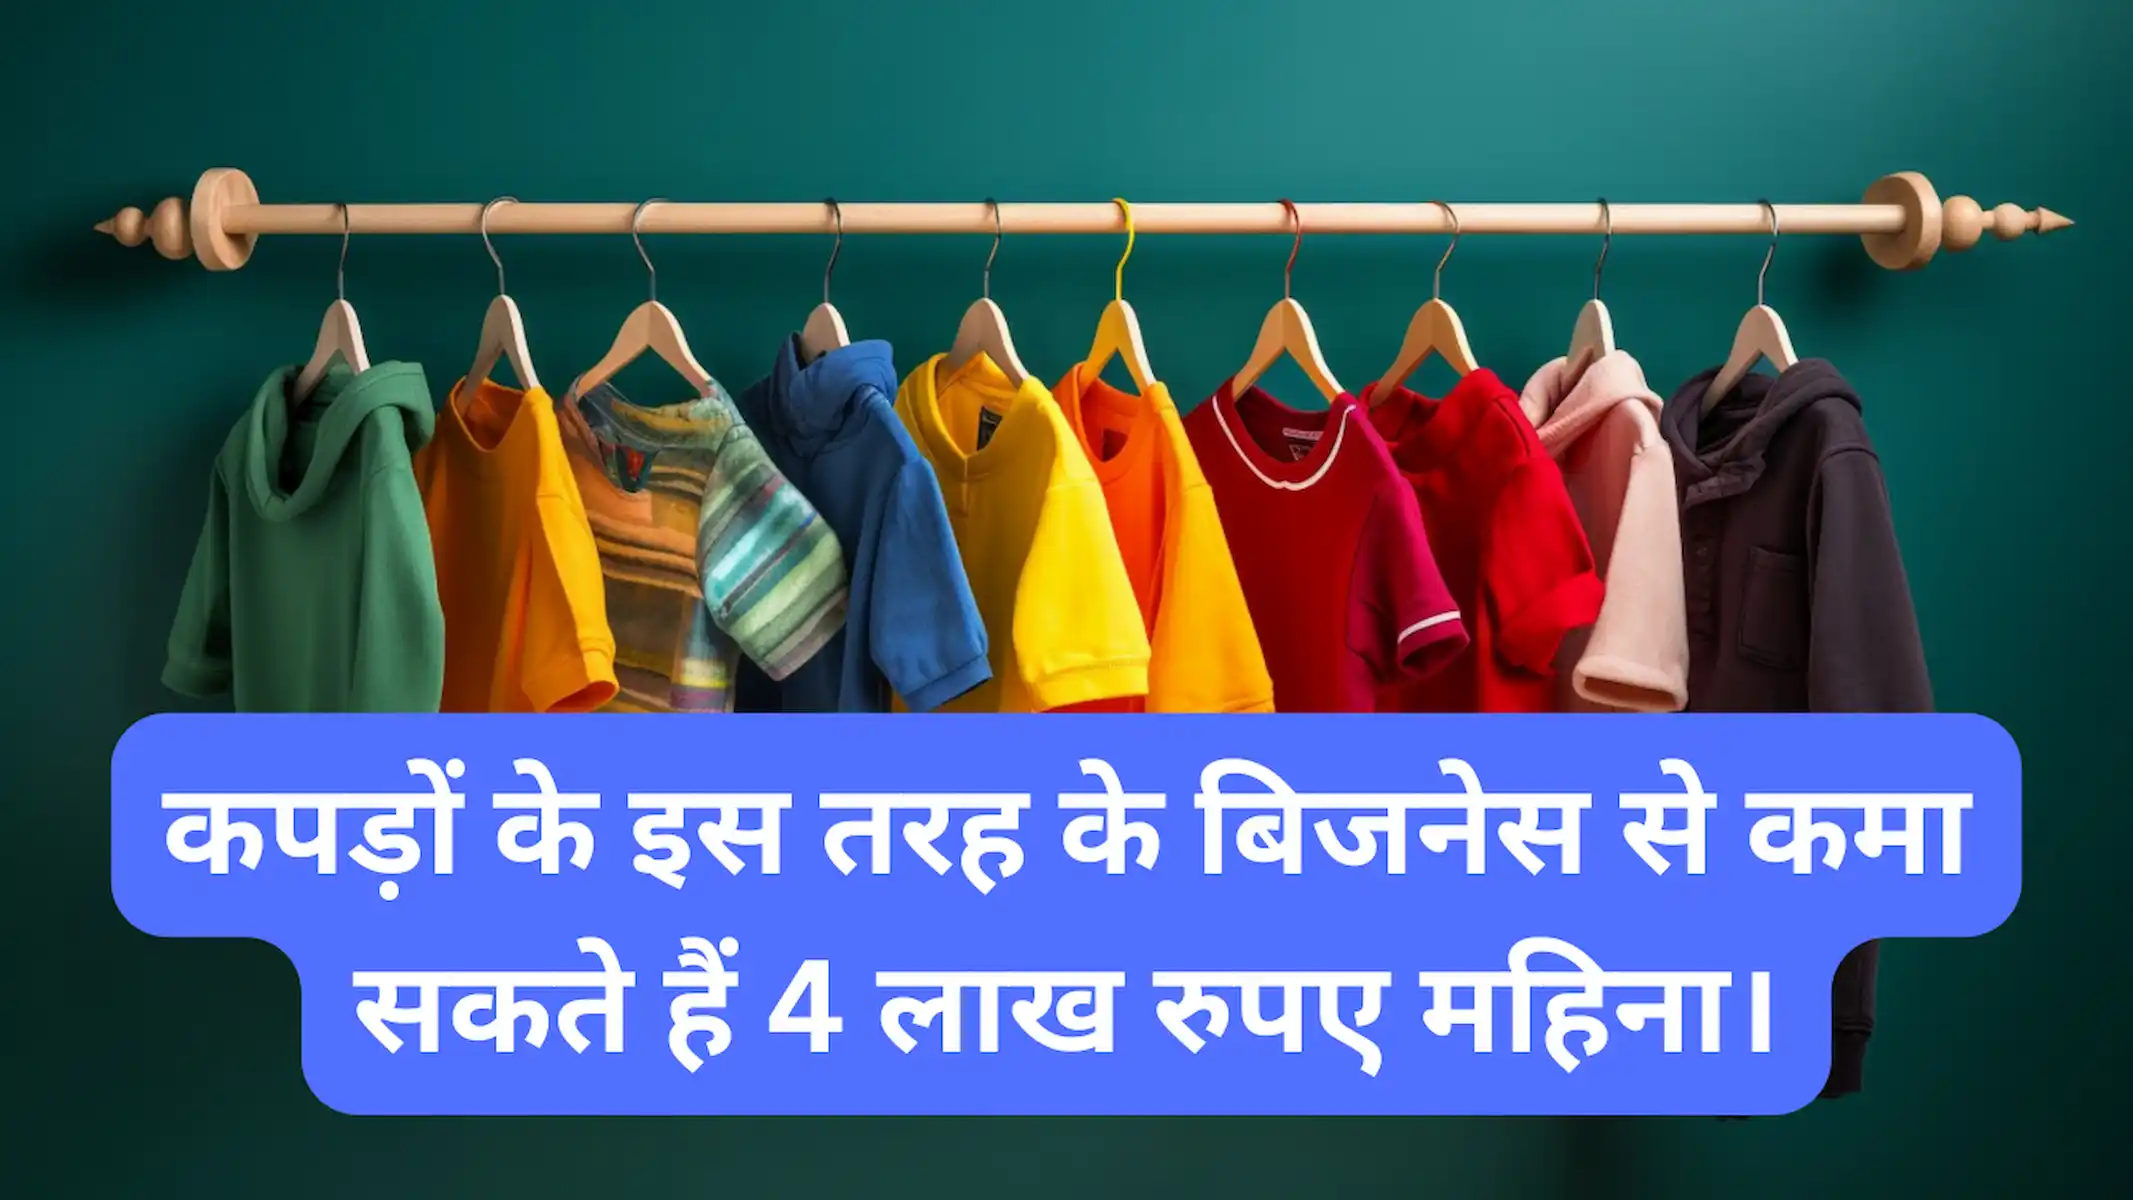 कपड़ों के इस तरह के बिजनेस से कमा सकते हैं 4 लाख रुपए महिना।